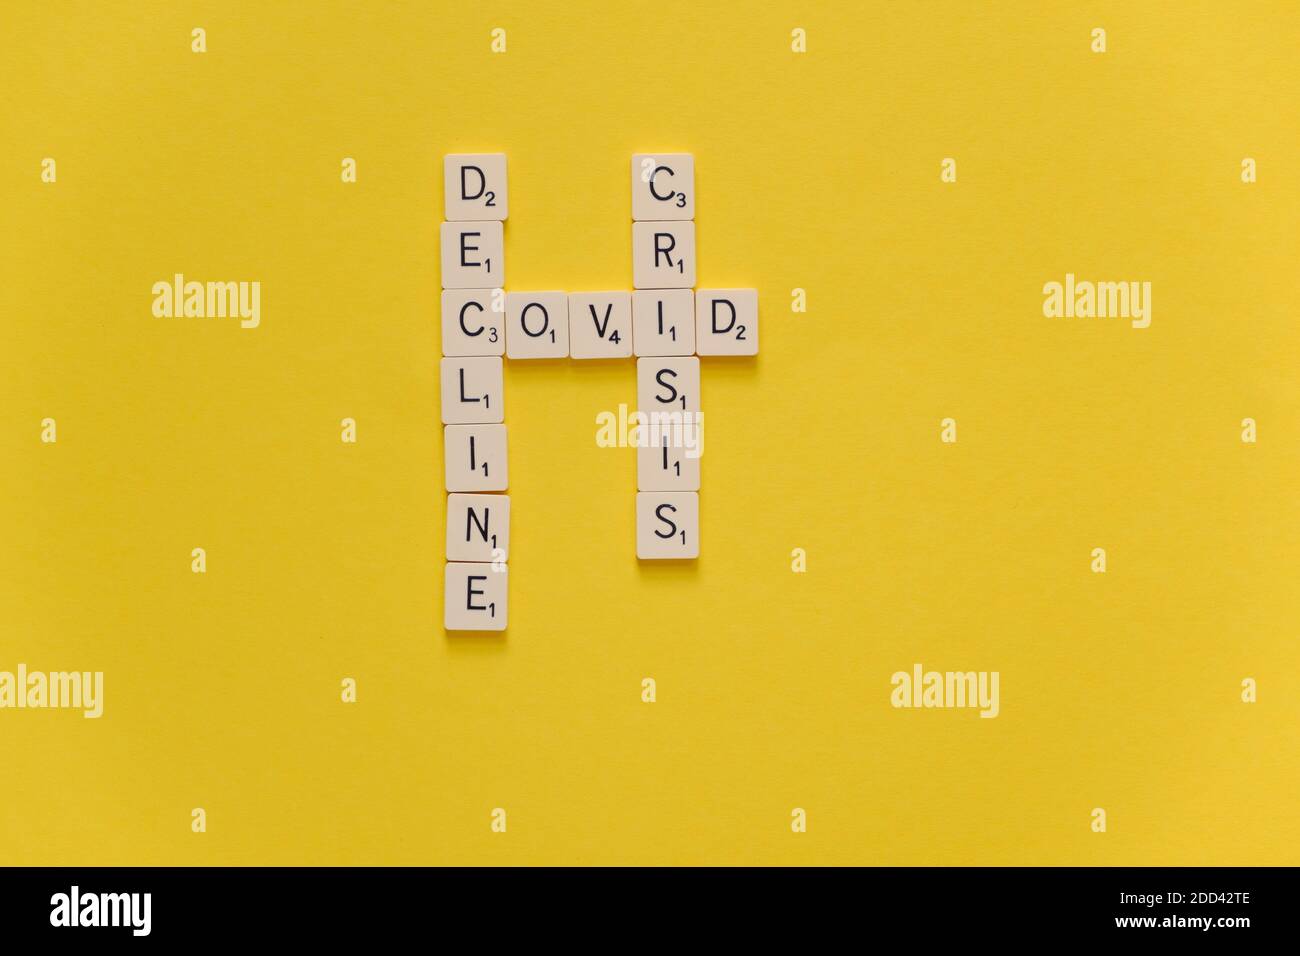 Rückgang Der Covid-Krise. Kreuzworträtsel auf gelbem Hintergrund. Speicherplatz kopieren. Stockfoto